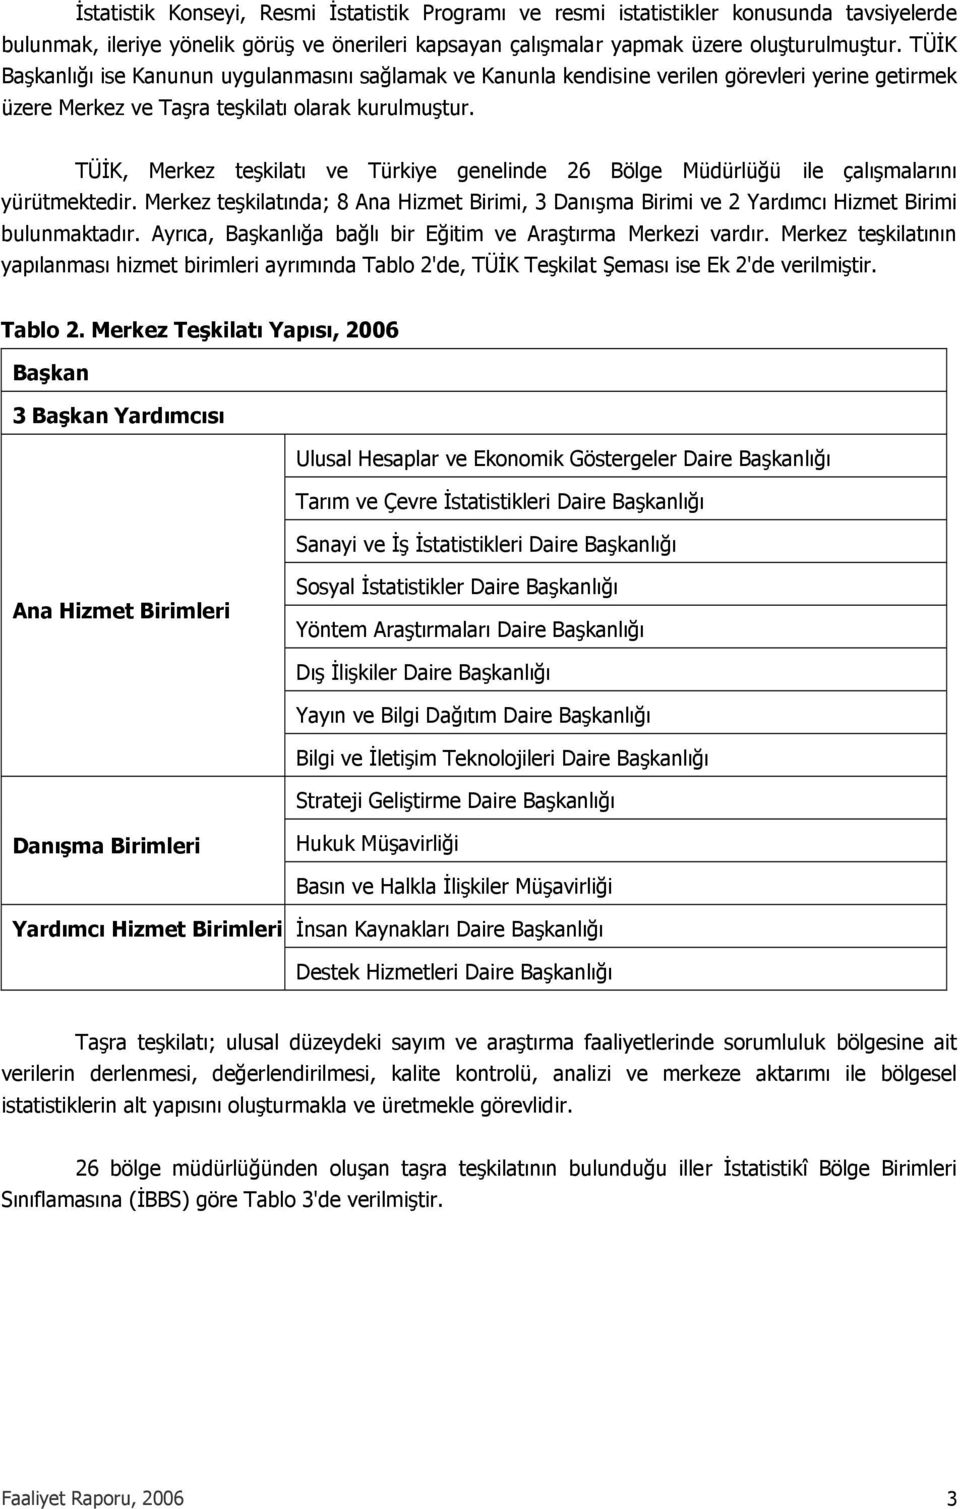 TÜİK, Merkez teşkilatı ve Türkiye genelinde 26 Bölge Müdürlüğü ile çalışmalarını yürütmektedir. Merkez teşkilatında; 8 Ana Hizmet Birimi, 3 Danışma Birimi ve 2 Yardımcı Hizmet Birimi bulunmaktadır.